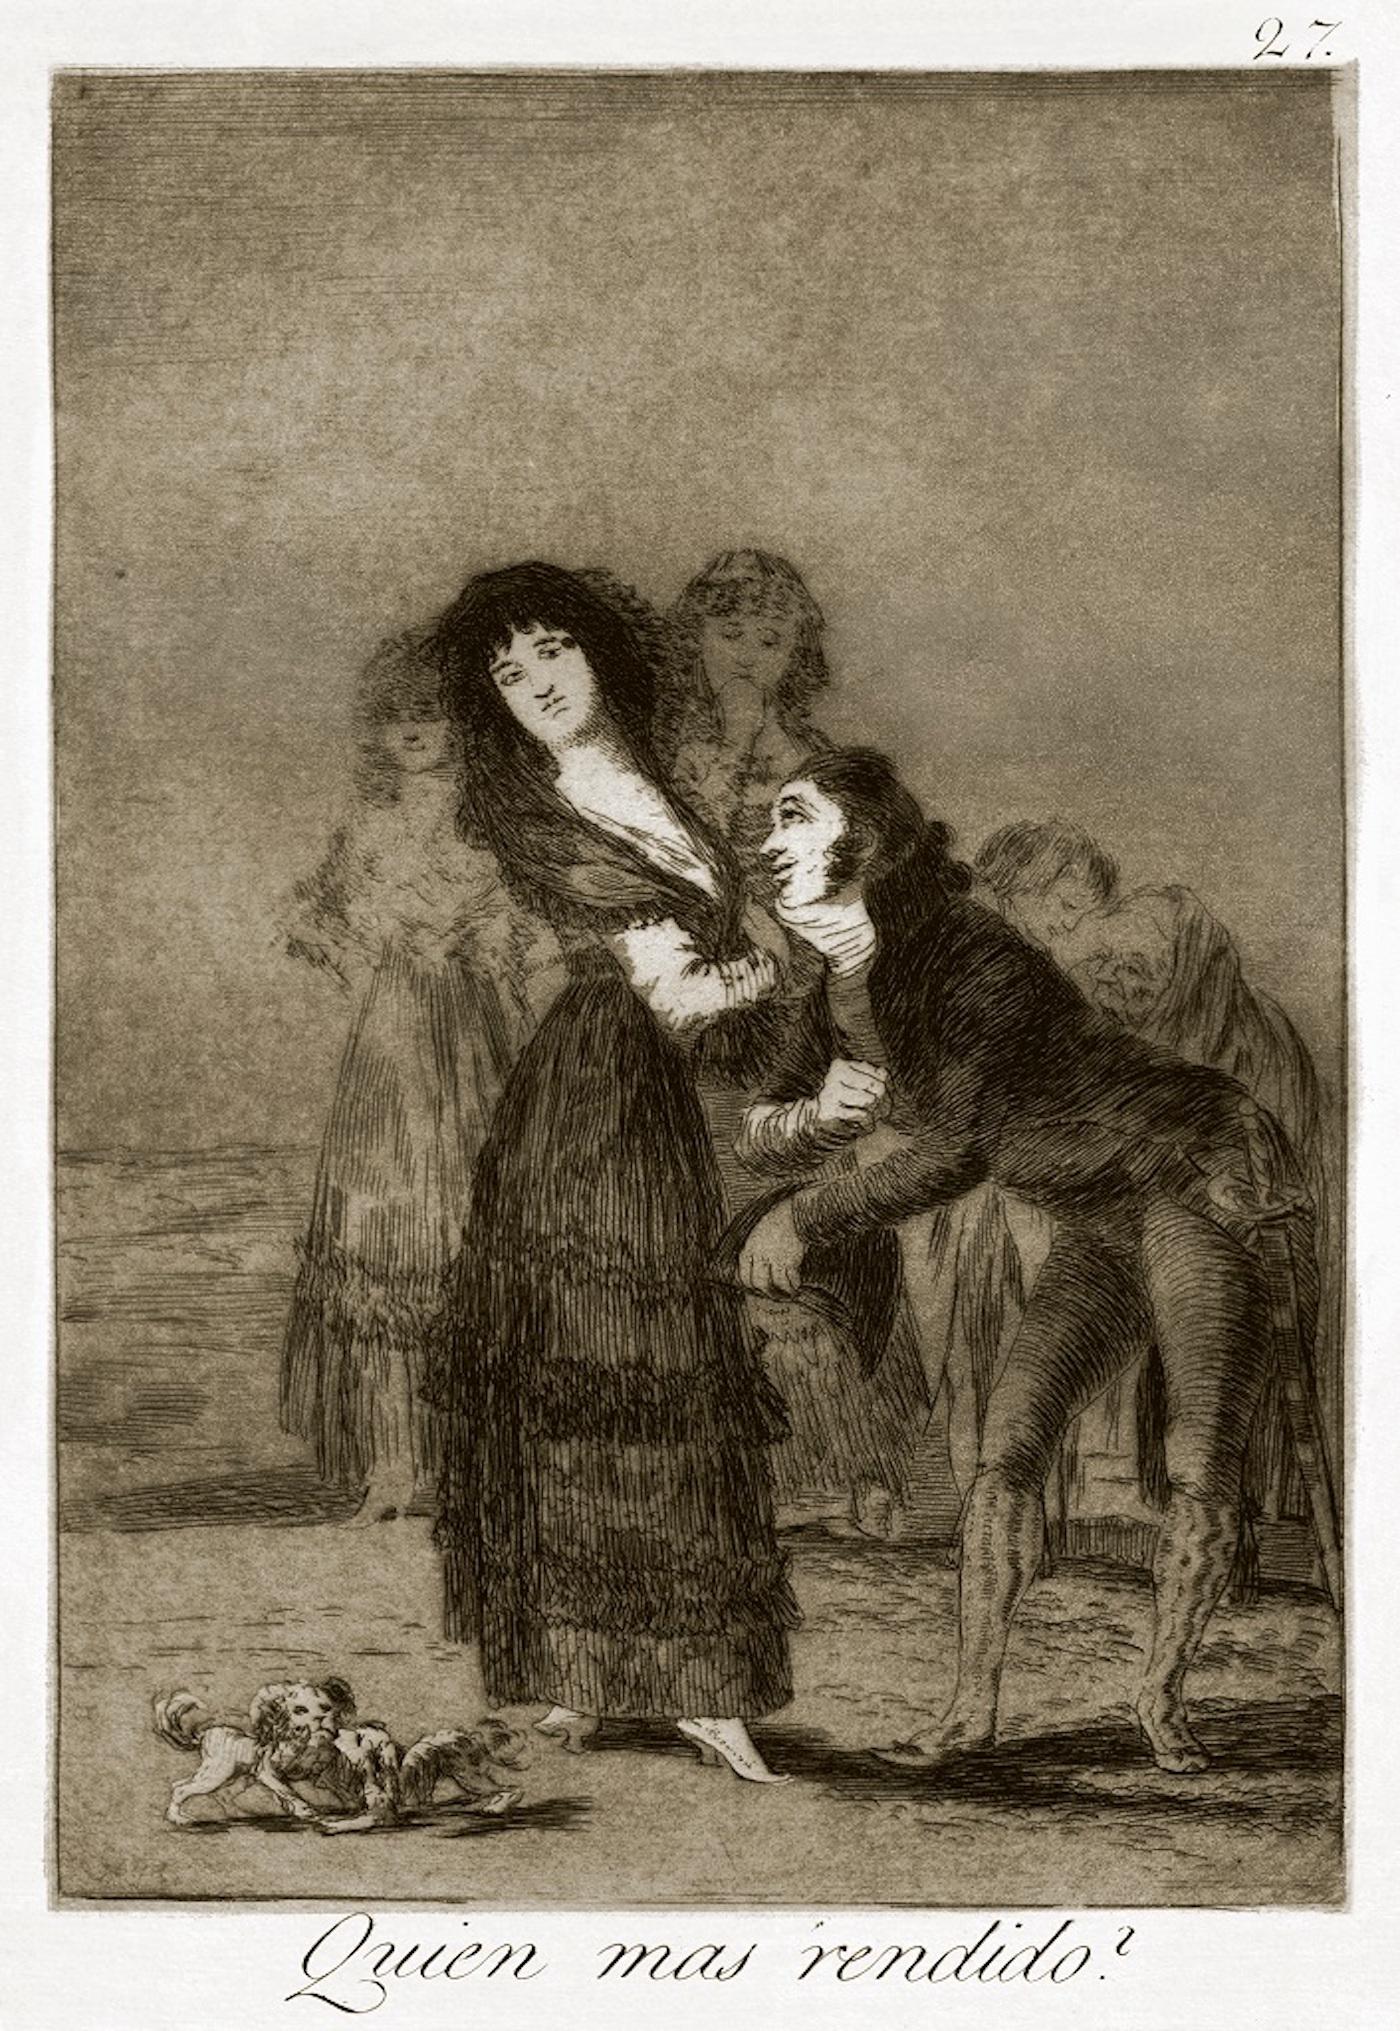 ¿Quién más rendido? ist eine Originalradierung von Francisco Goya, die 1799 zum ersten Mal veröffentlicht wurde.

Radierung auf Velin.

Die Platte ist Teil der dritten Ausgabe von "Los Caprichos", die 1868 von der Calcografia Nacional für die Real